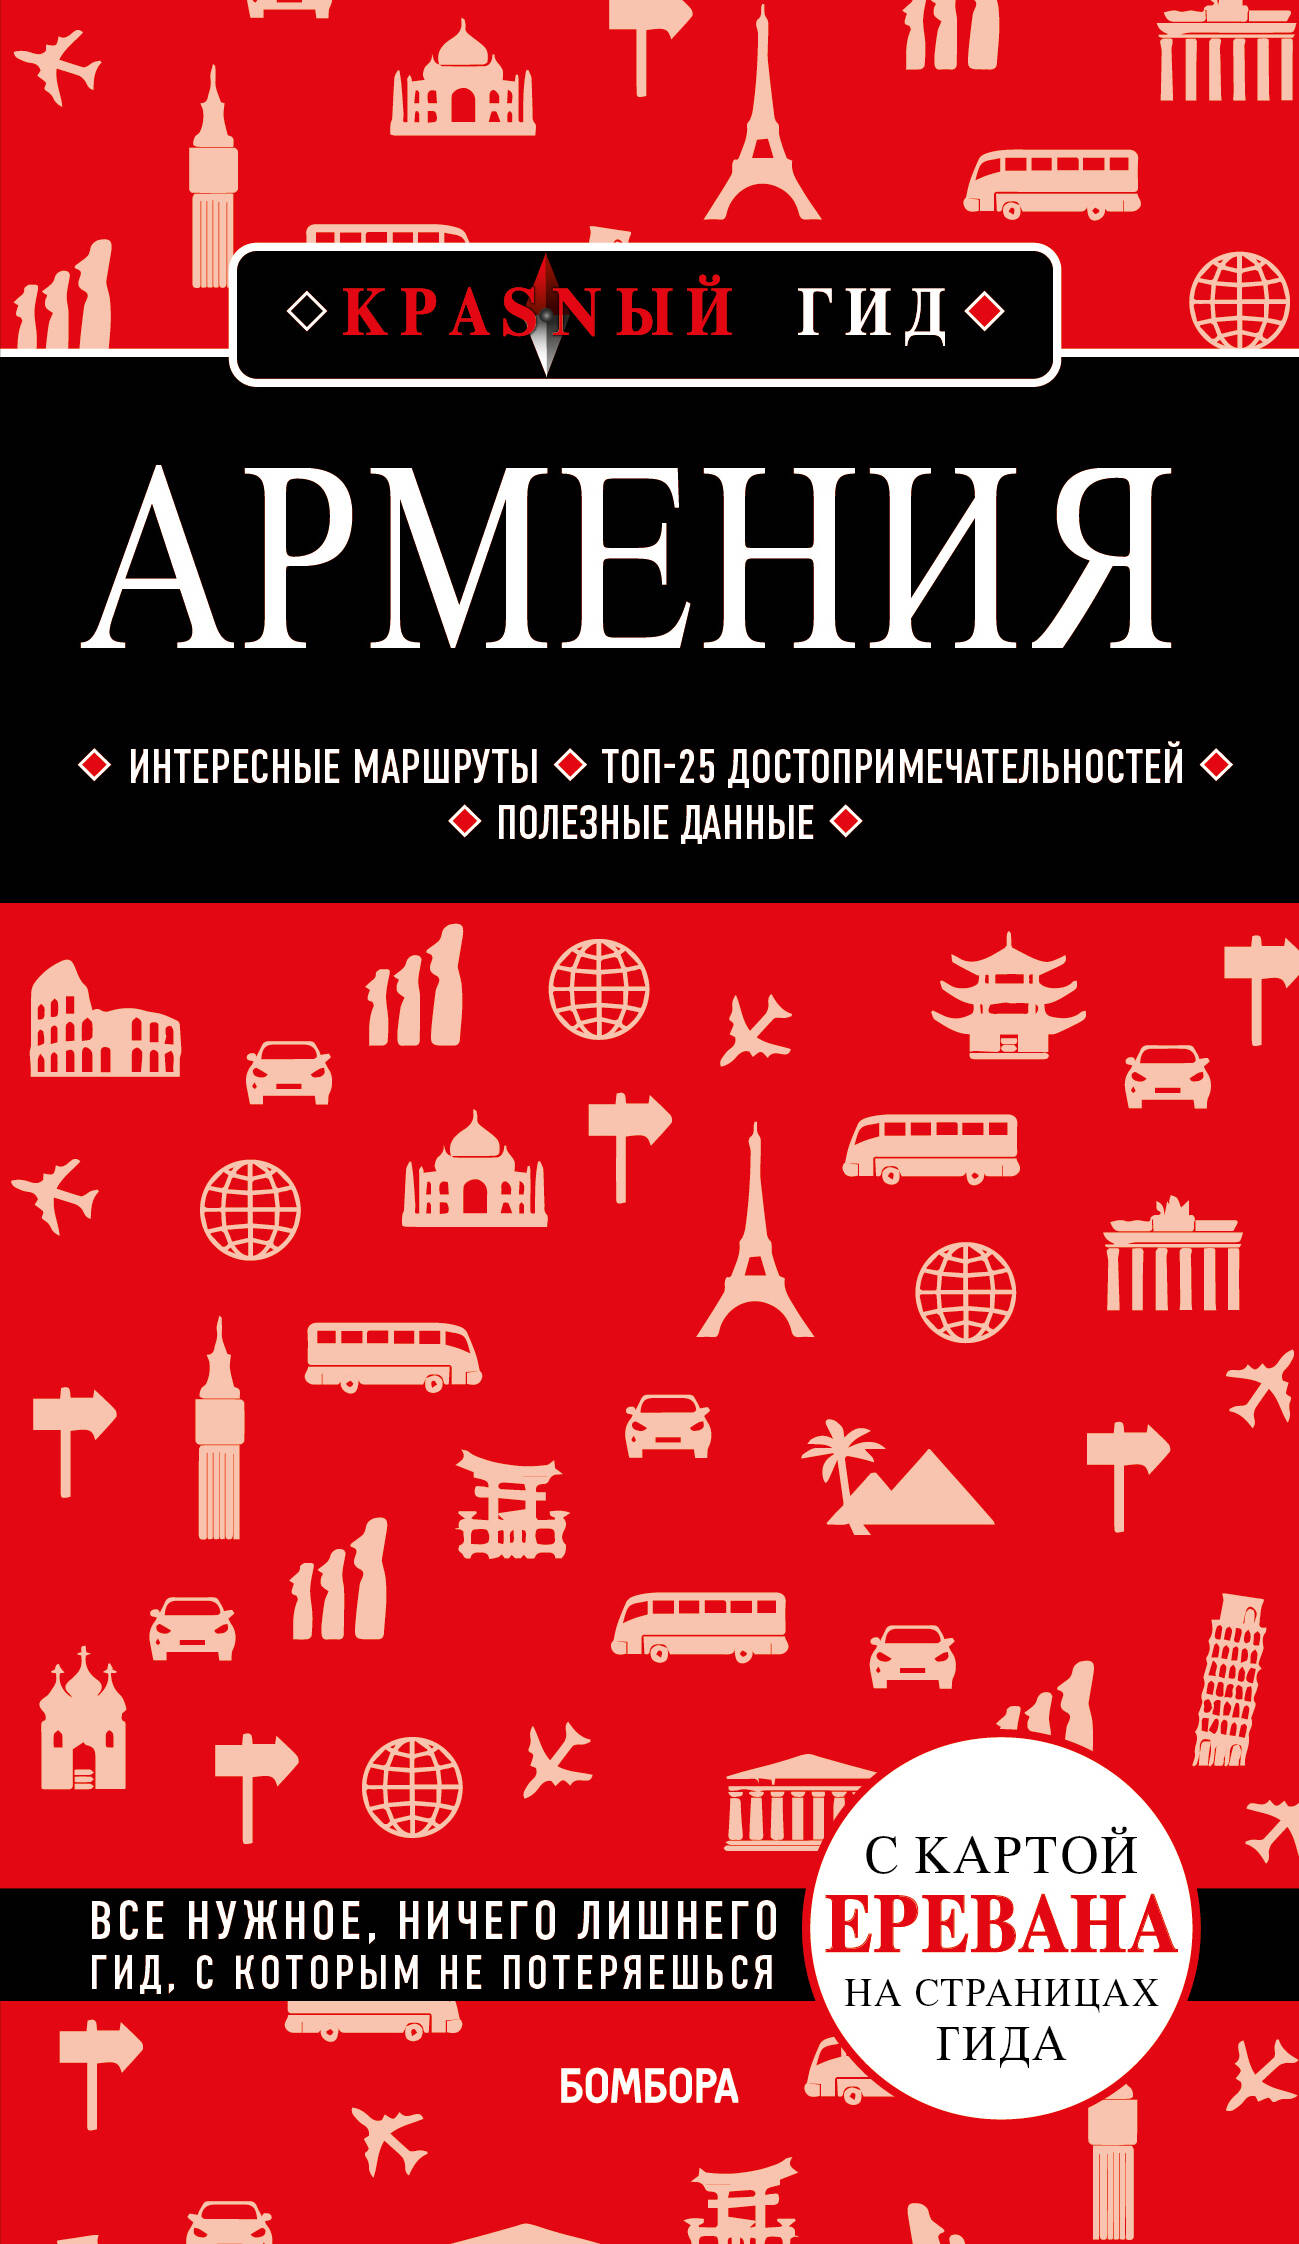 Кульков Дмитрий Евгеньевич - Армения. 4-е изд., испр. и доп.